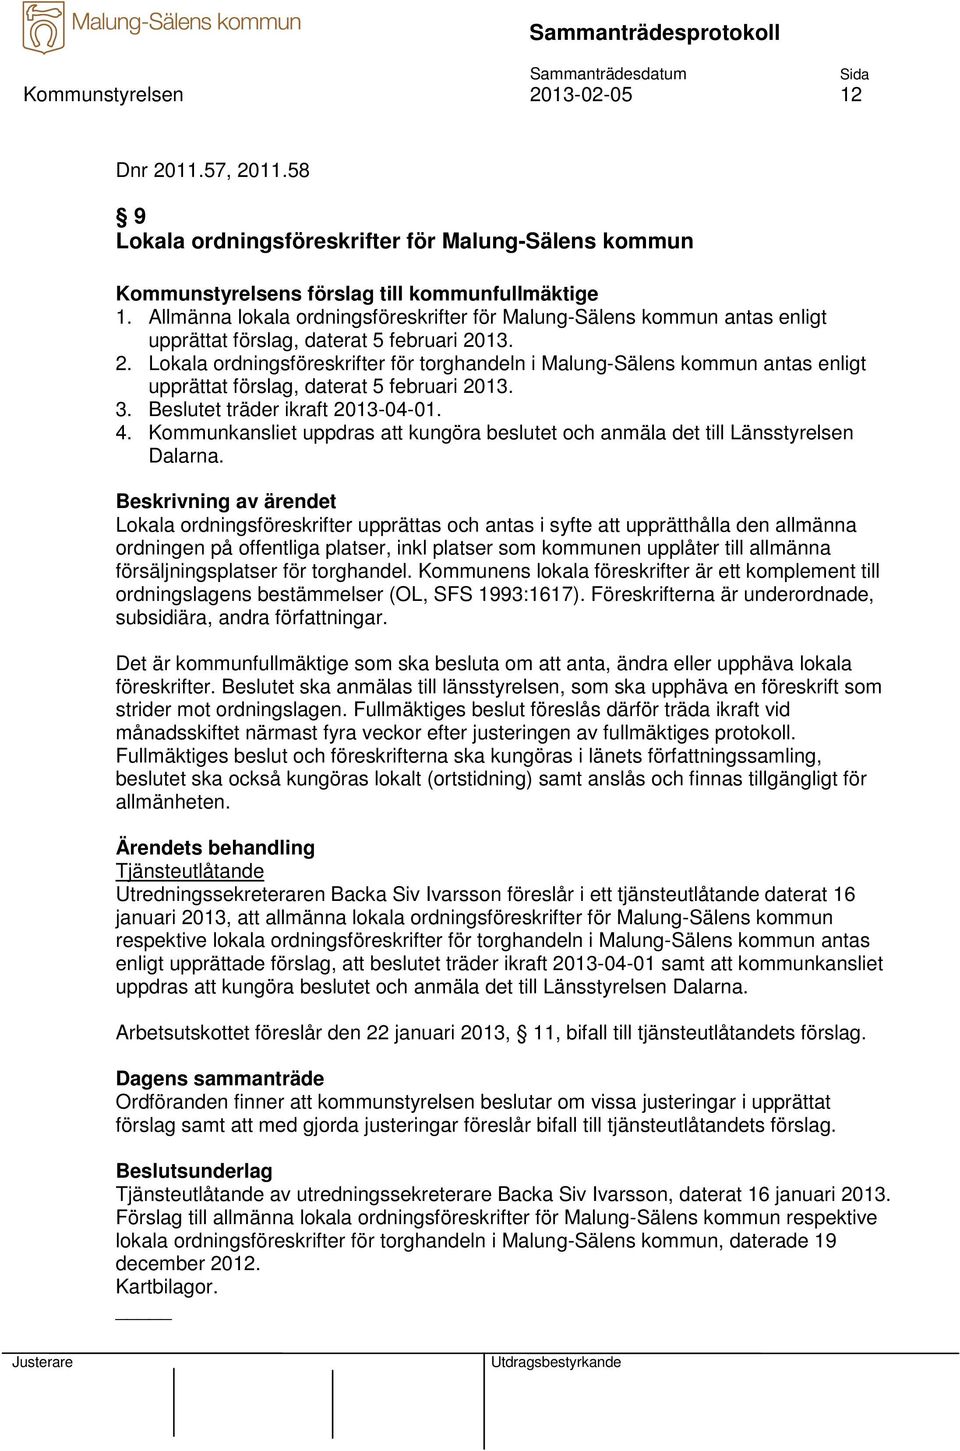 13. 2. Lokala ordningsföreskrifter för torghandeln i Malung-Sälens kommun antas enligt upprättat förslag, daterat 5 februari 2013. 3. Beslutet träder ikraft 2013-04-01. 4.